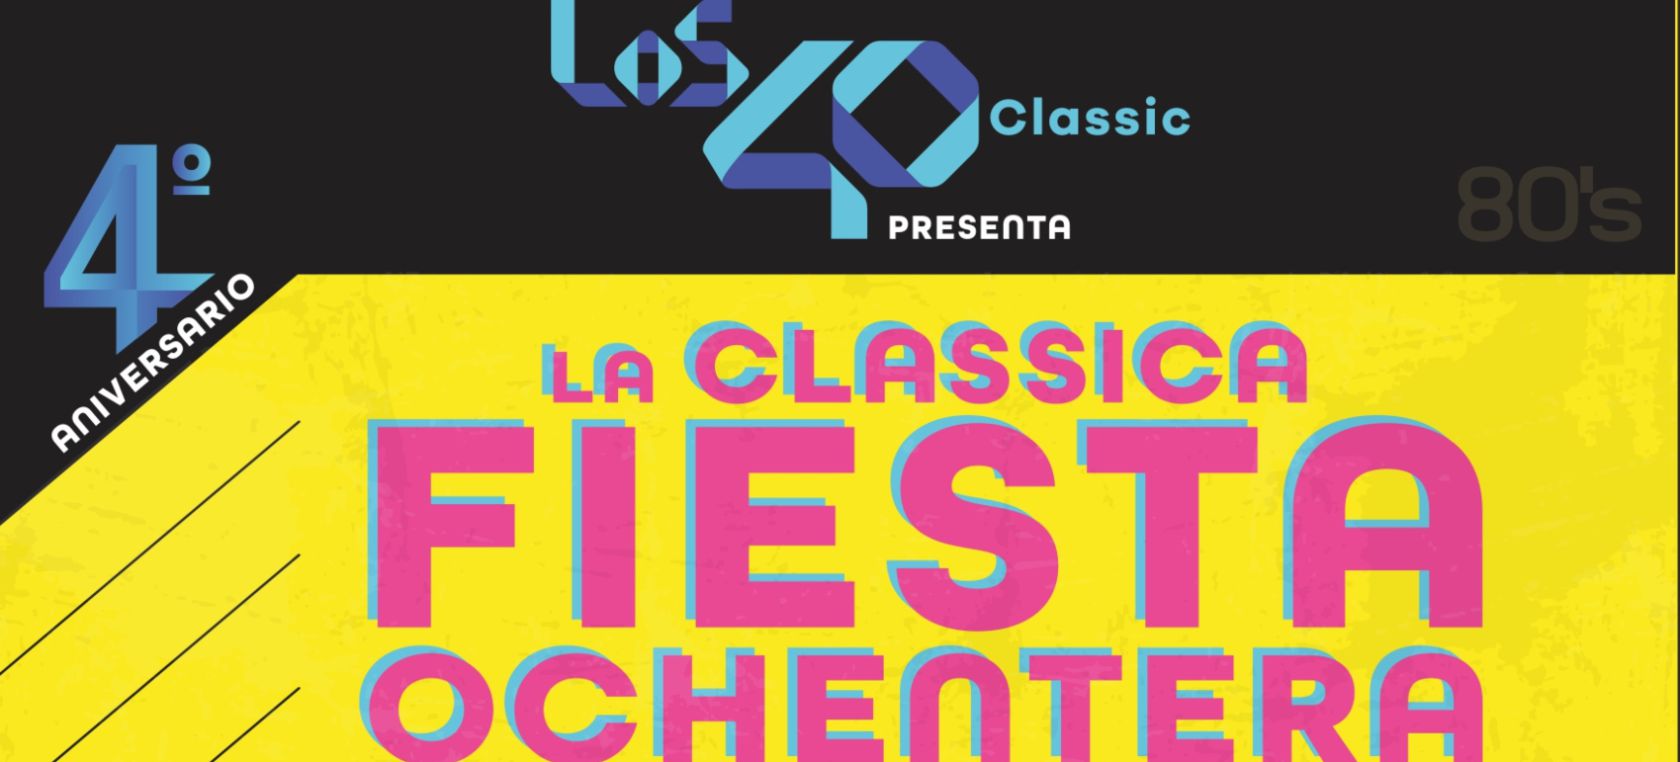 Celebra nuestro 4º aniversario con la clásica fiesta ochentera de LOS40 Classic